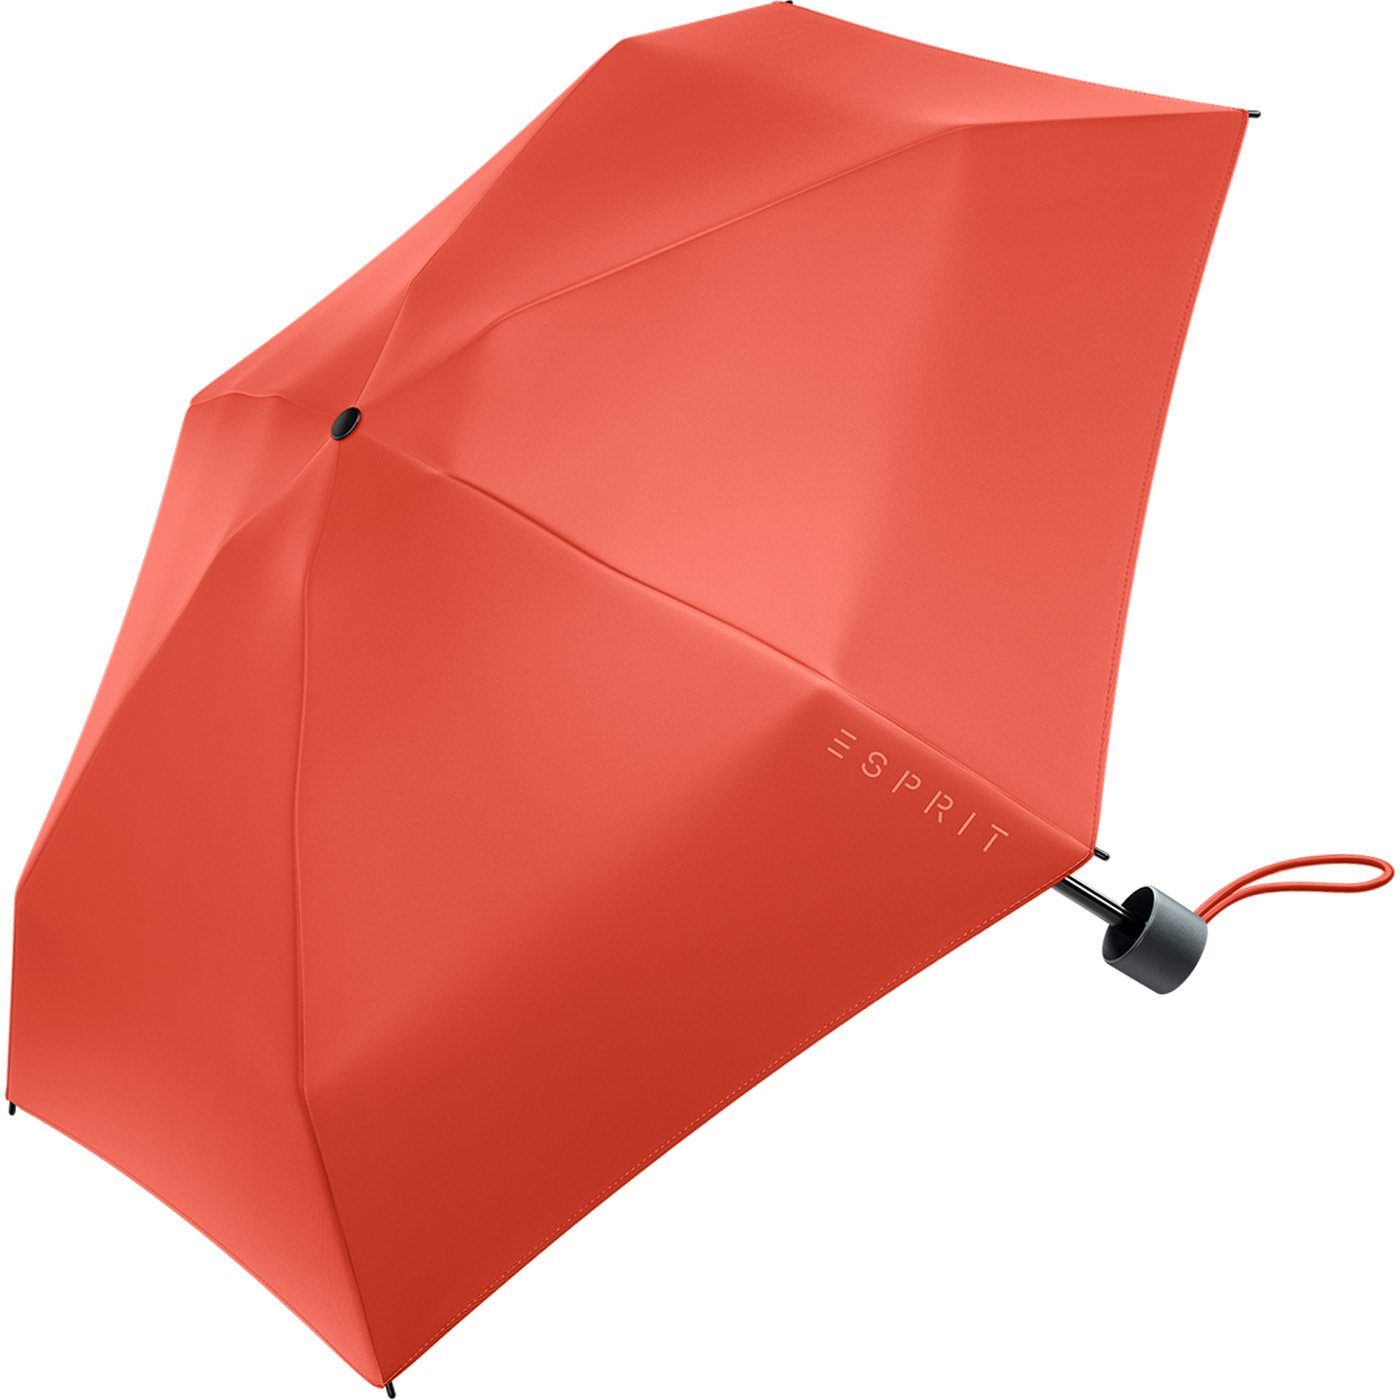 Esprit Langregenschirm - Super orange Damen neuen den in spicy 2023, Petito Trendfarben Regenschirm HW Mini